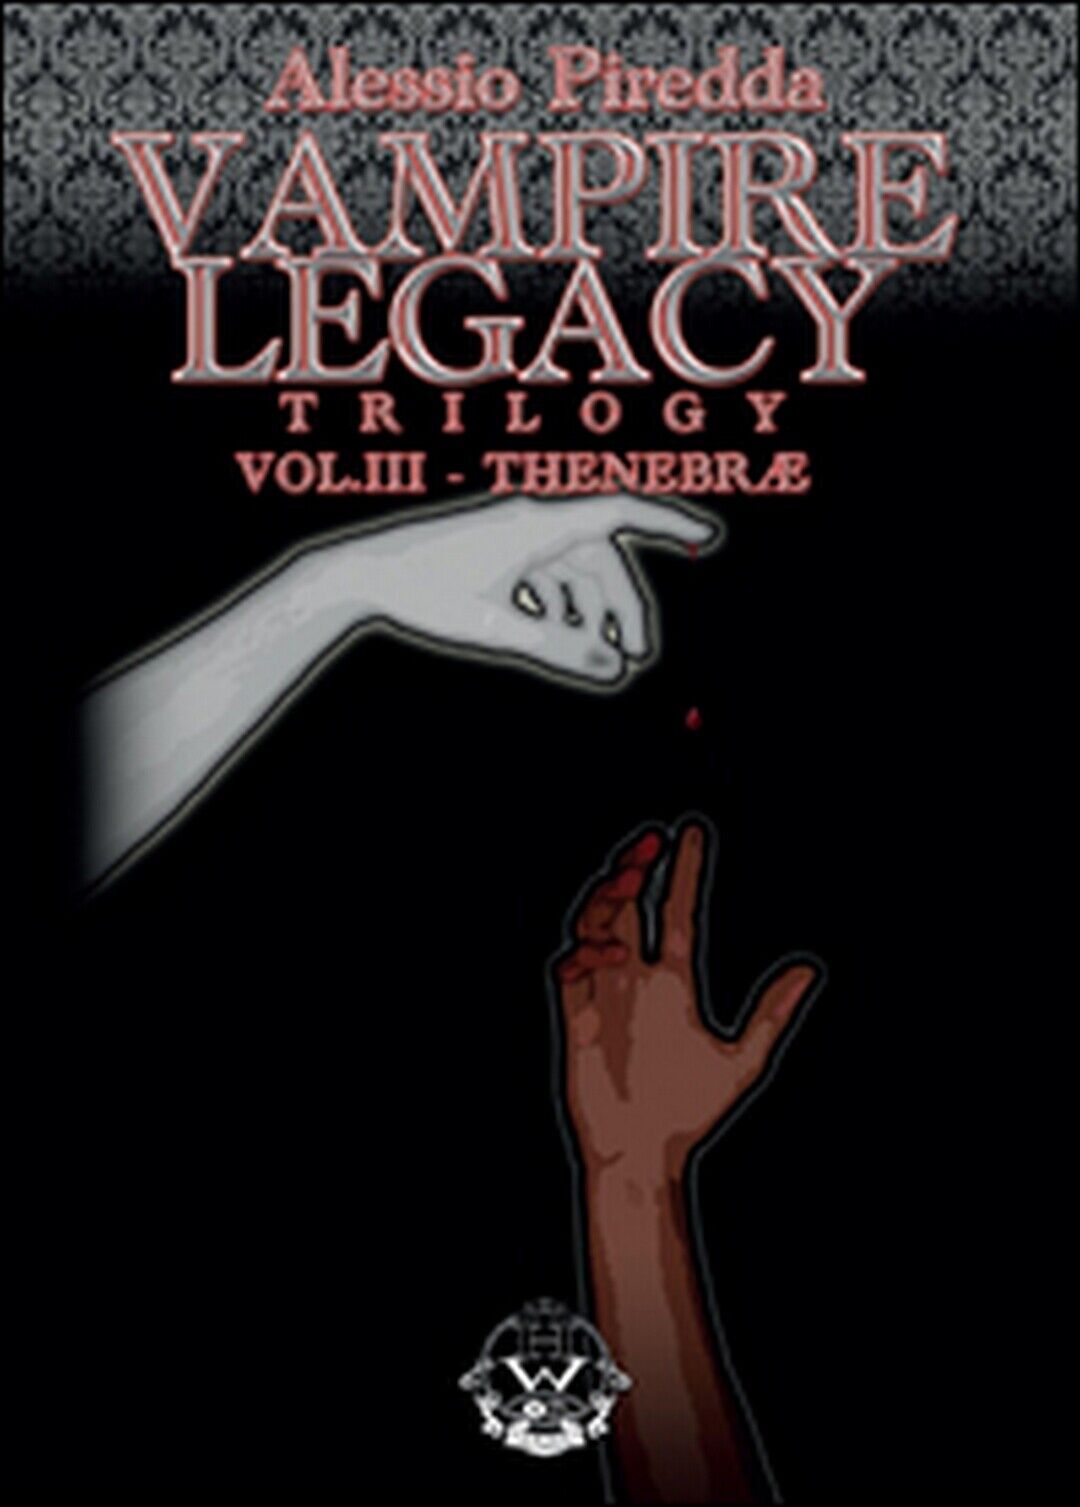 Thenebrae. Vampire legacy trilogy Vol.3  di Alessio Piredda,  2015,  Youcanprint libro usato